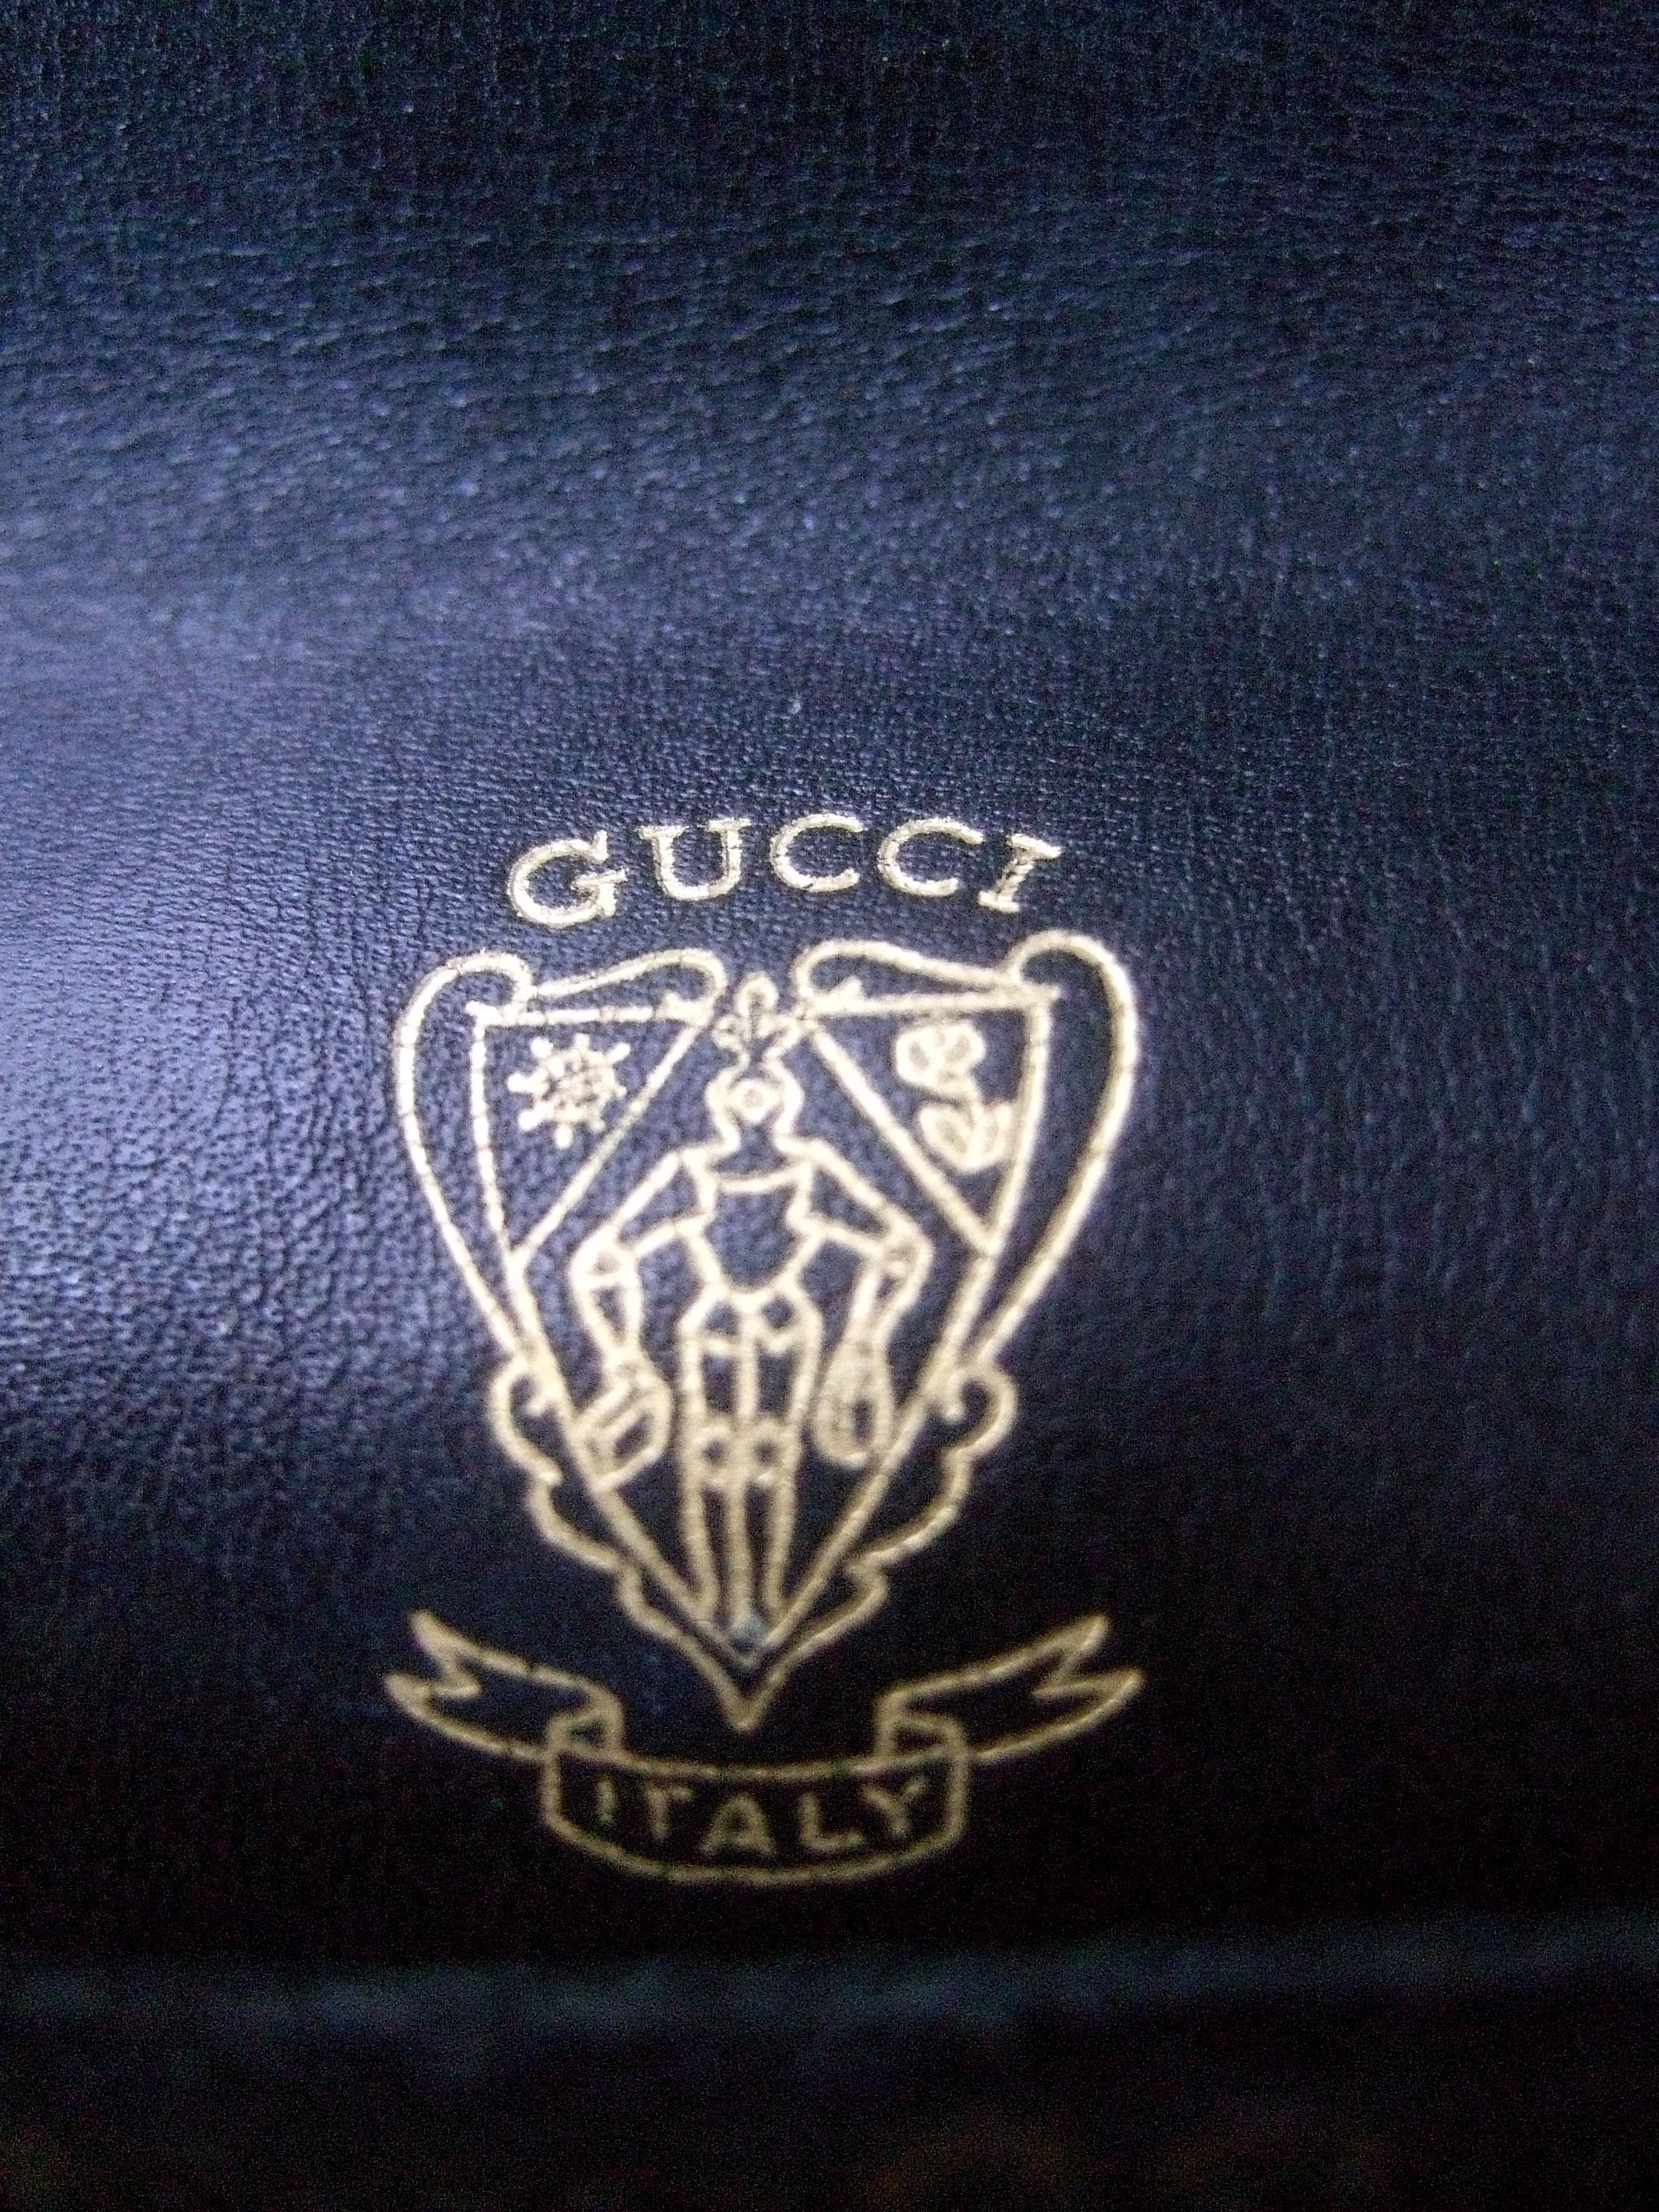 Gucci Italy Sleek Black & Brown Suede Blondie Clutch c 1970s 13